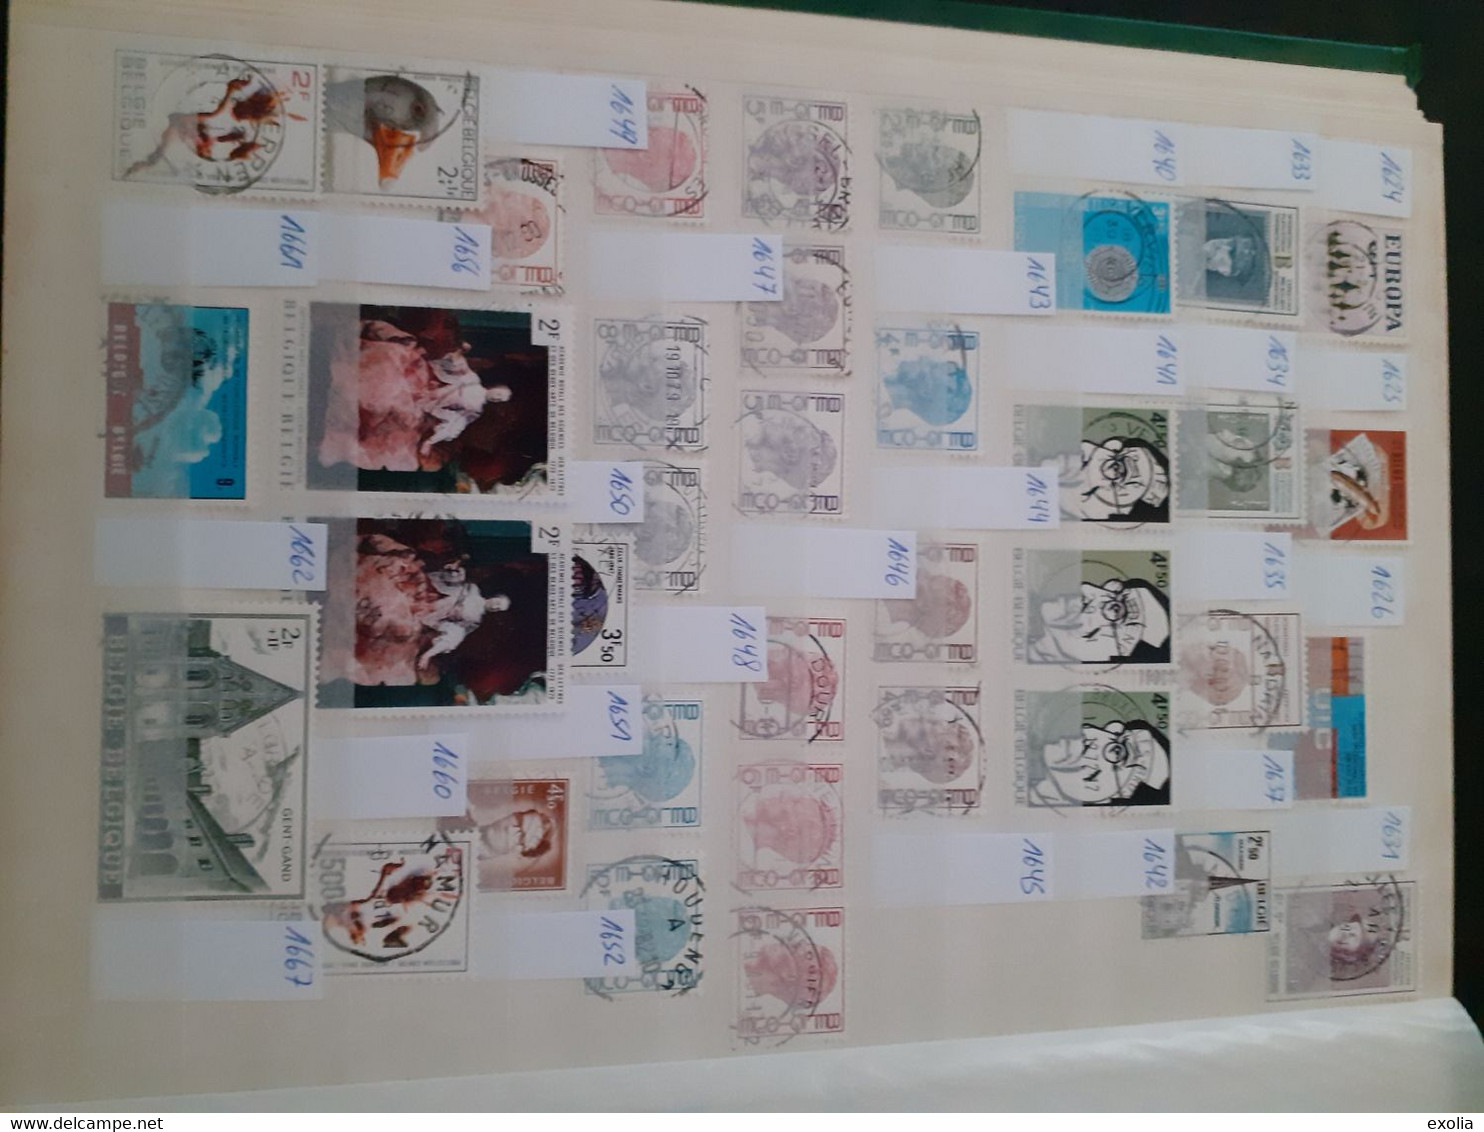 Collection timbres Belgique lot 3 albums oblitérations centrales choisies concours entre COB numéros 30 et 4415. Lire